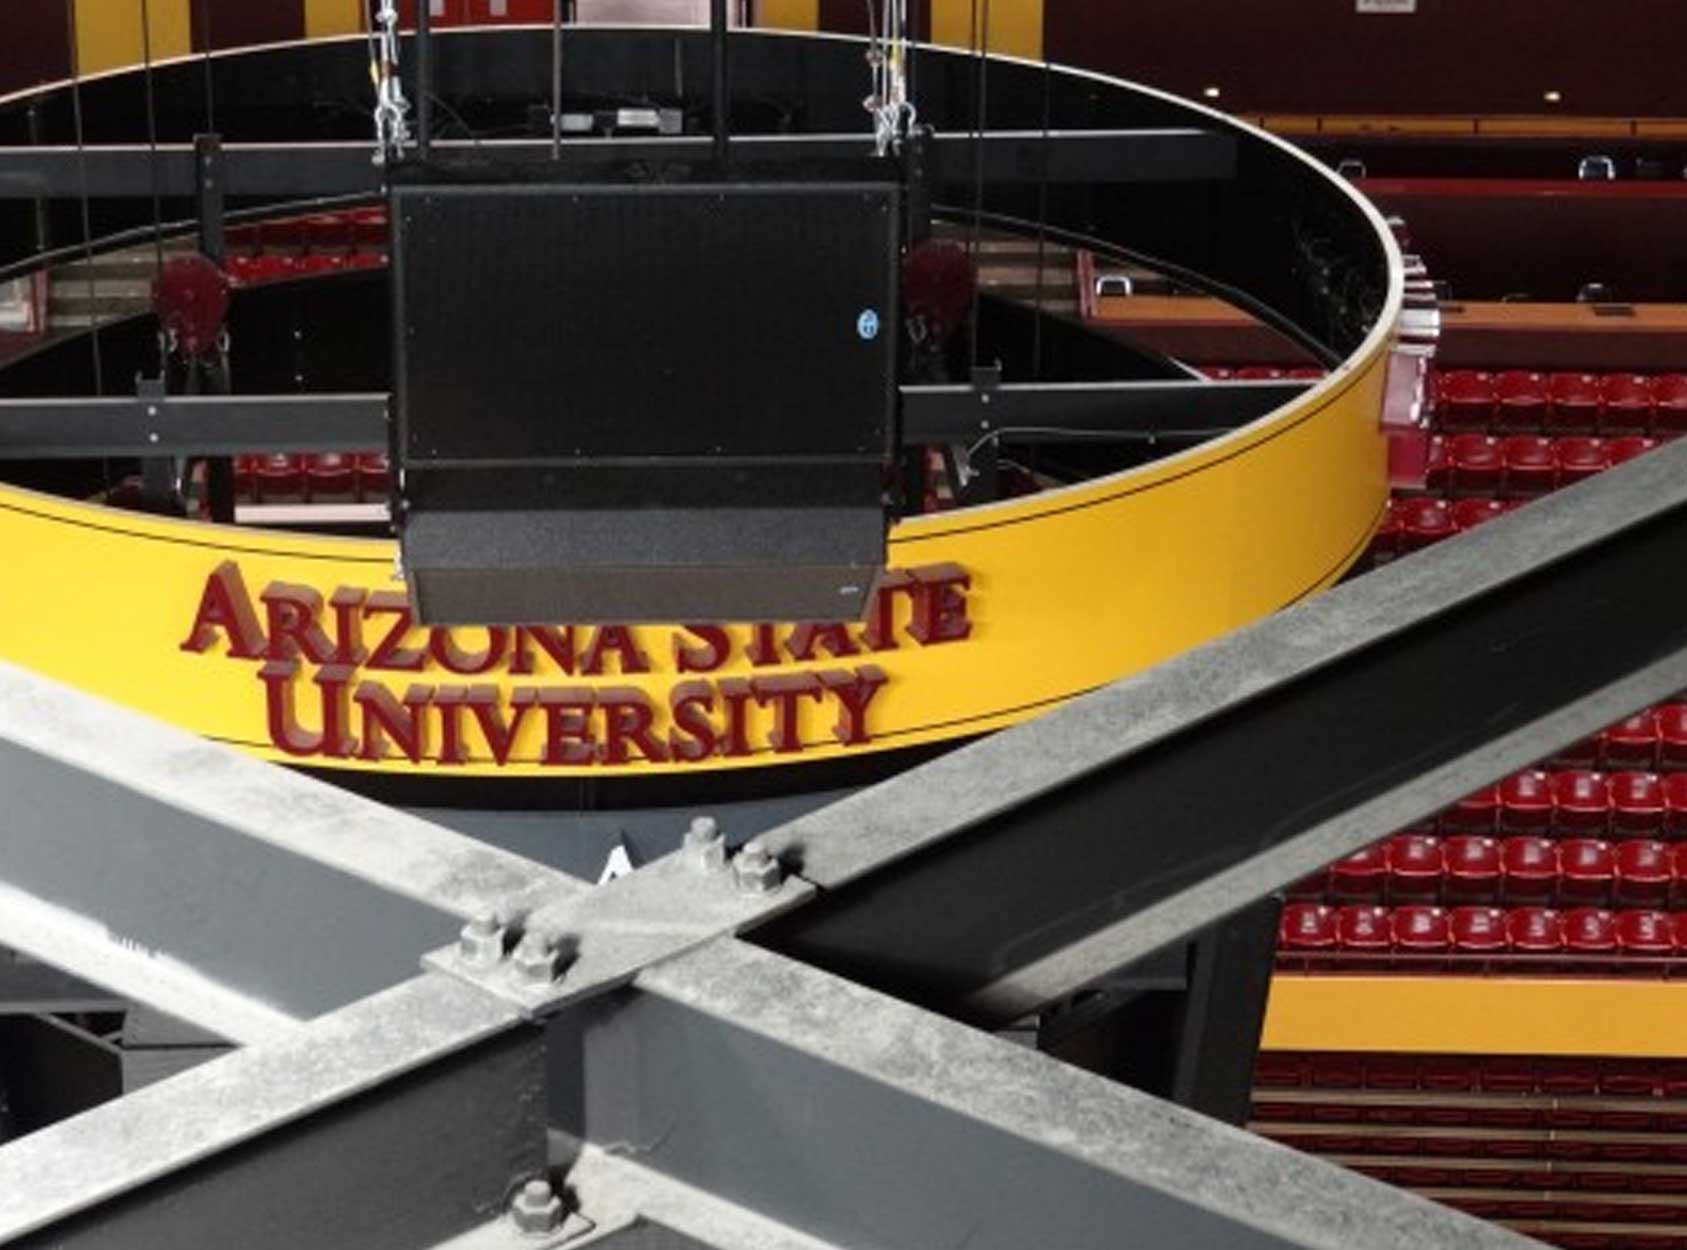 Danley loudspeakers installed at Arizona State University